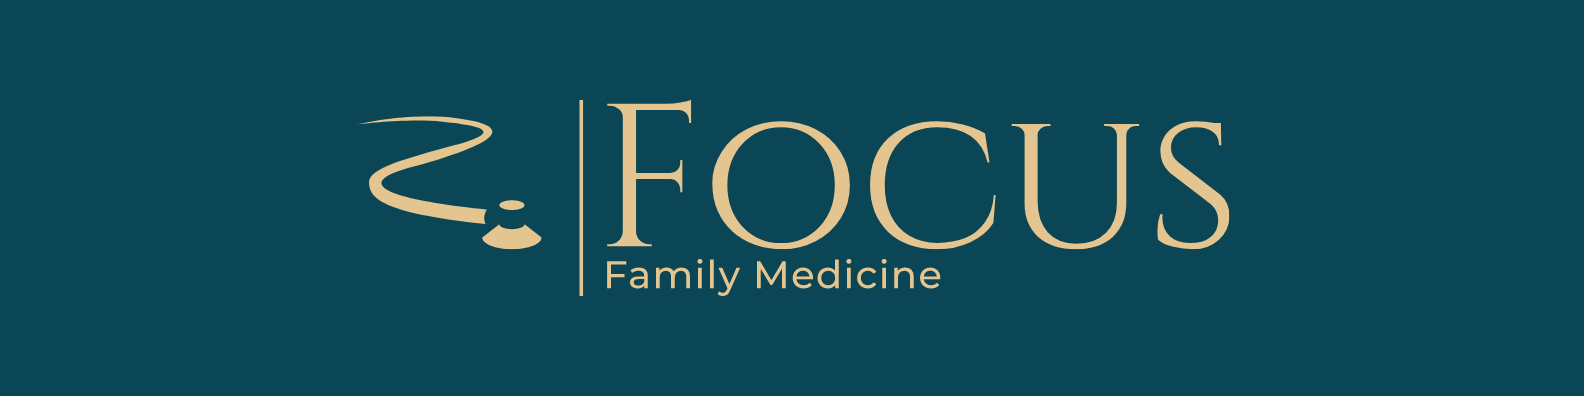 Focus Family Medicine